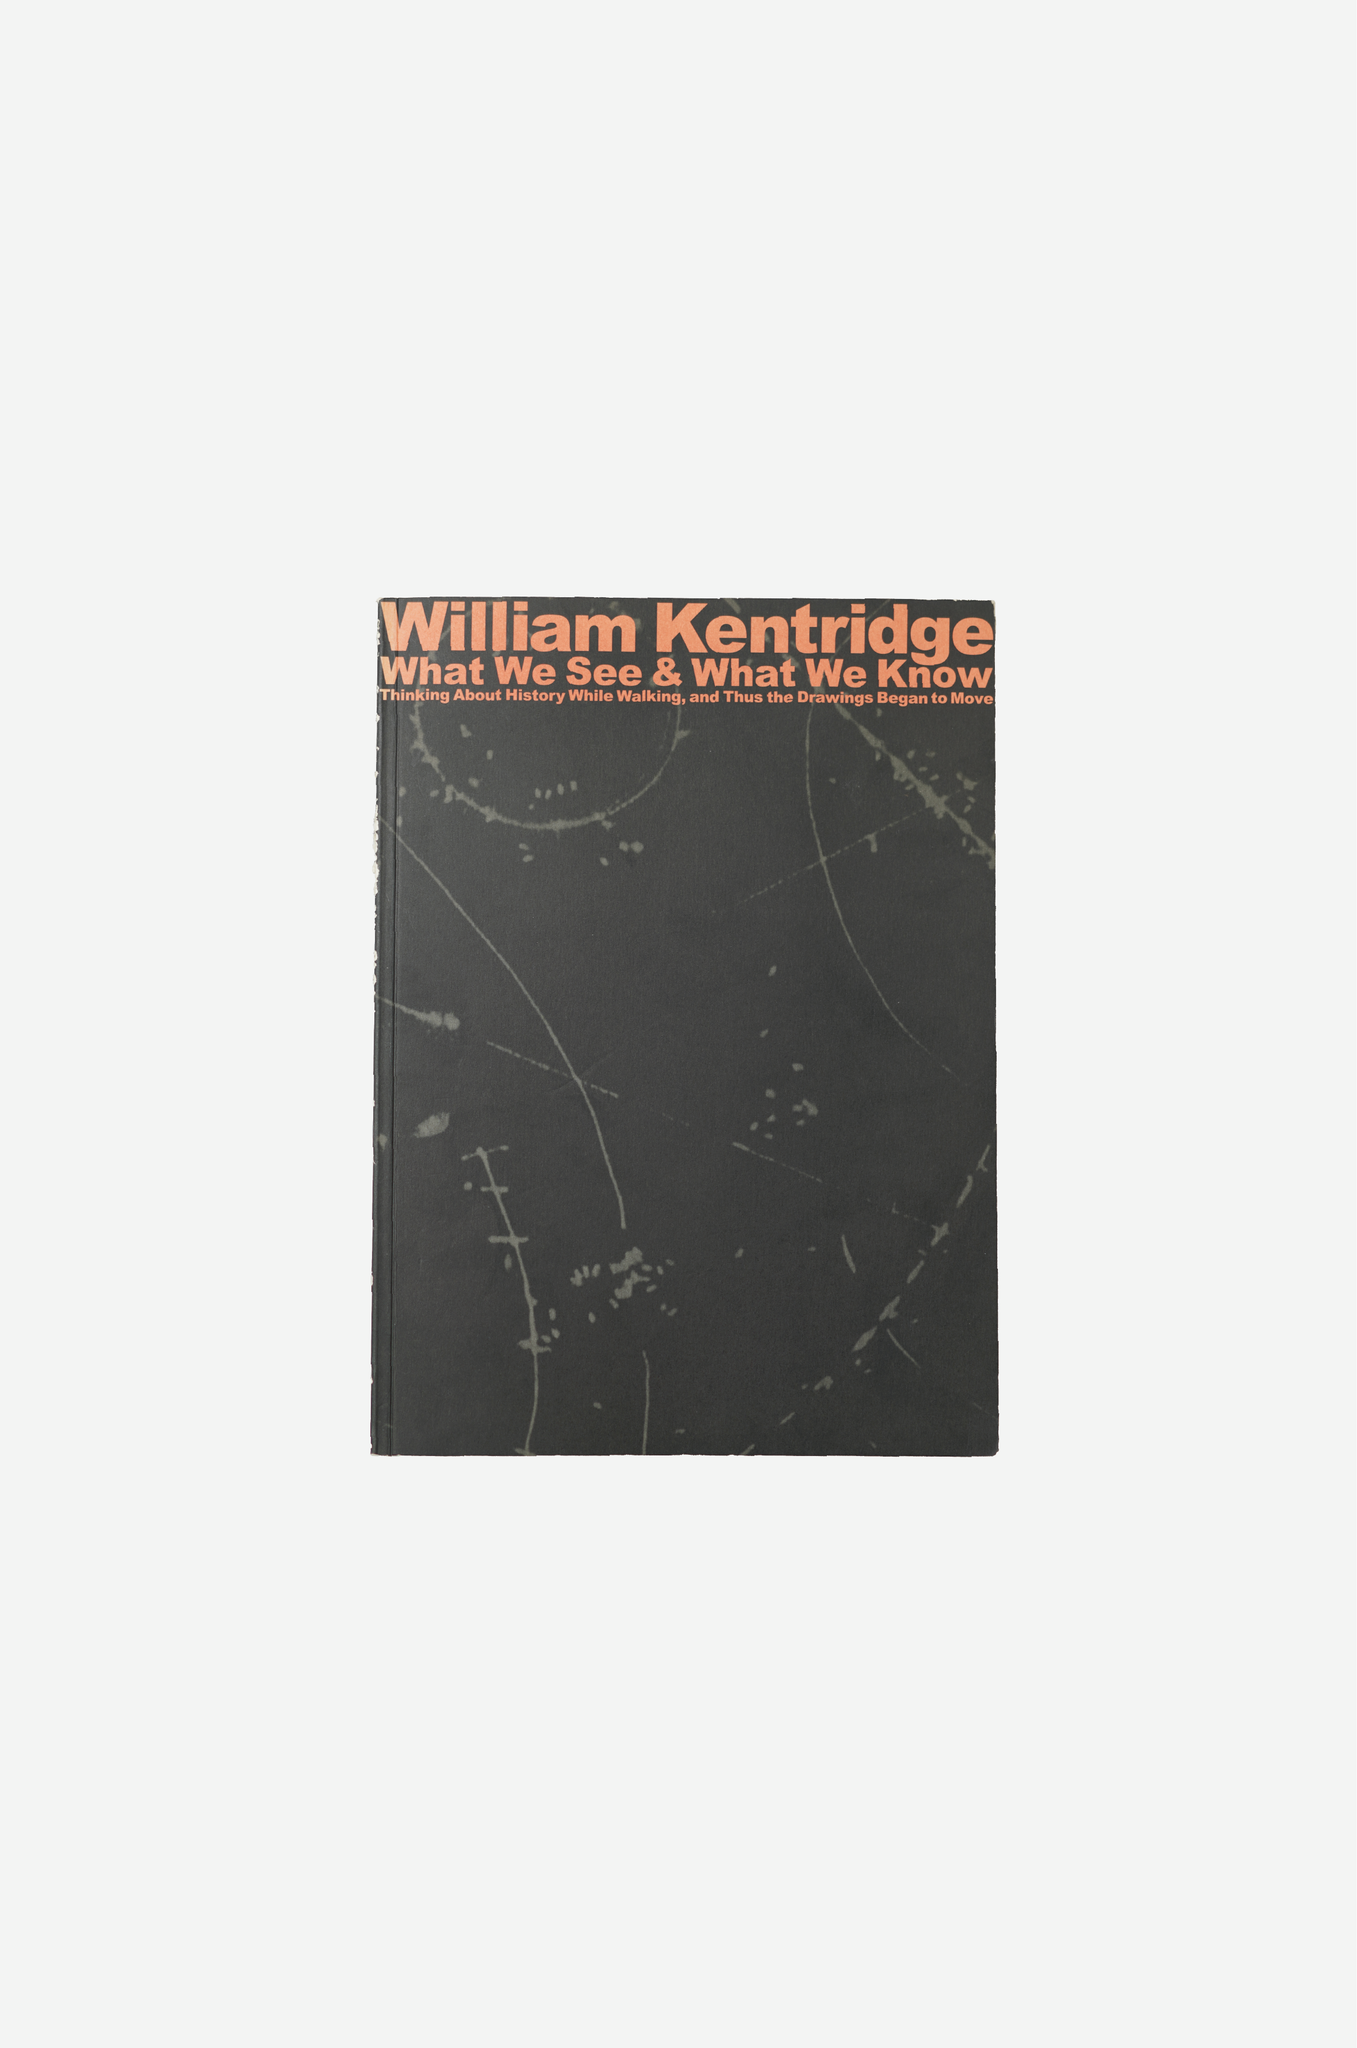 William Kentridge-Thinking about history while walking